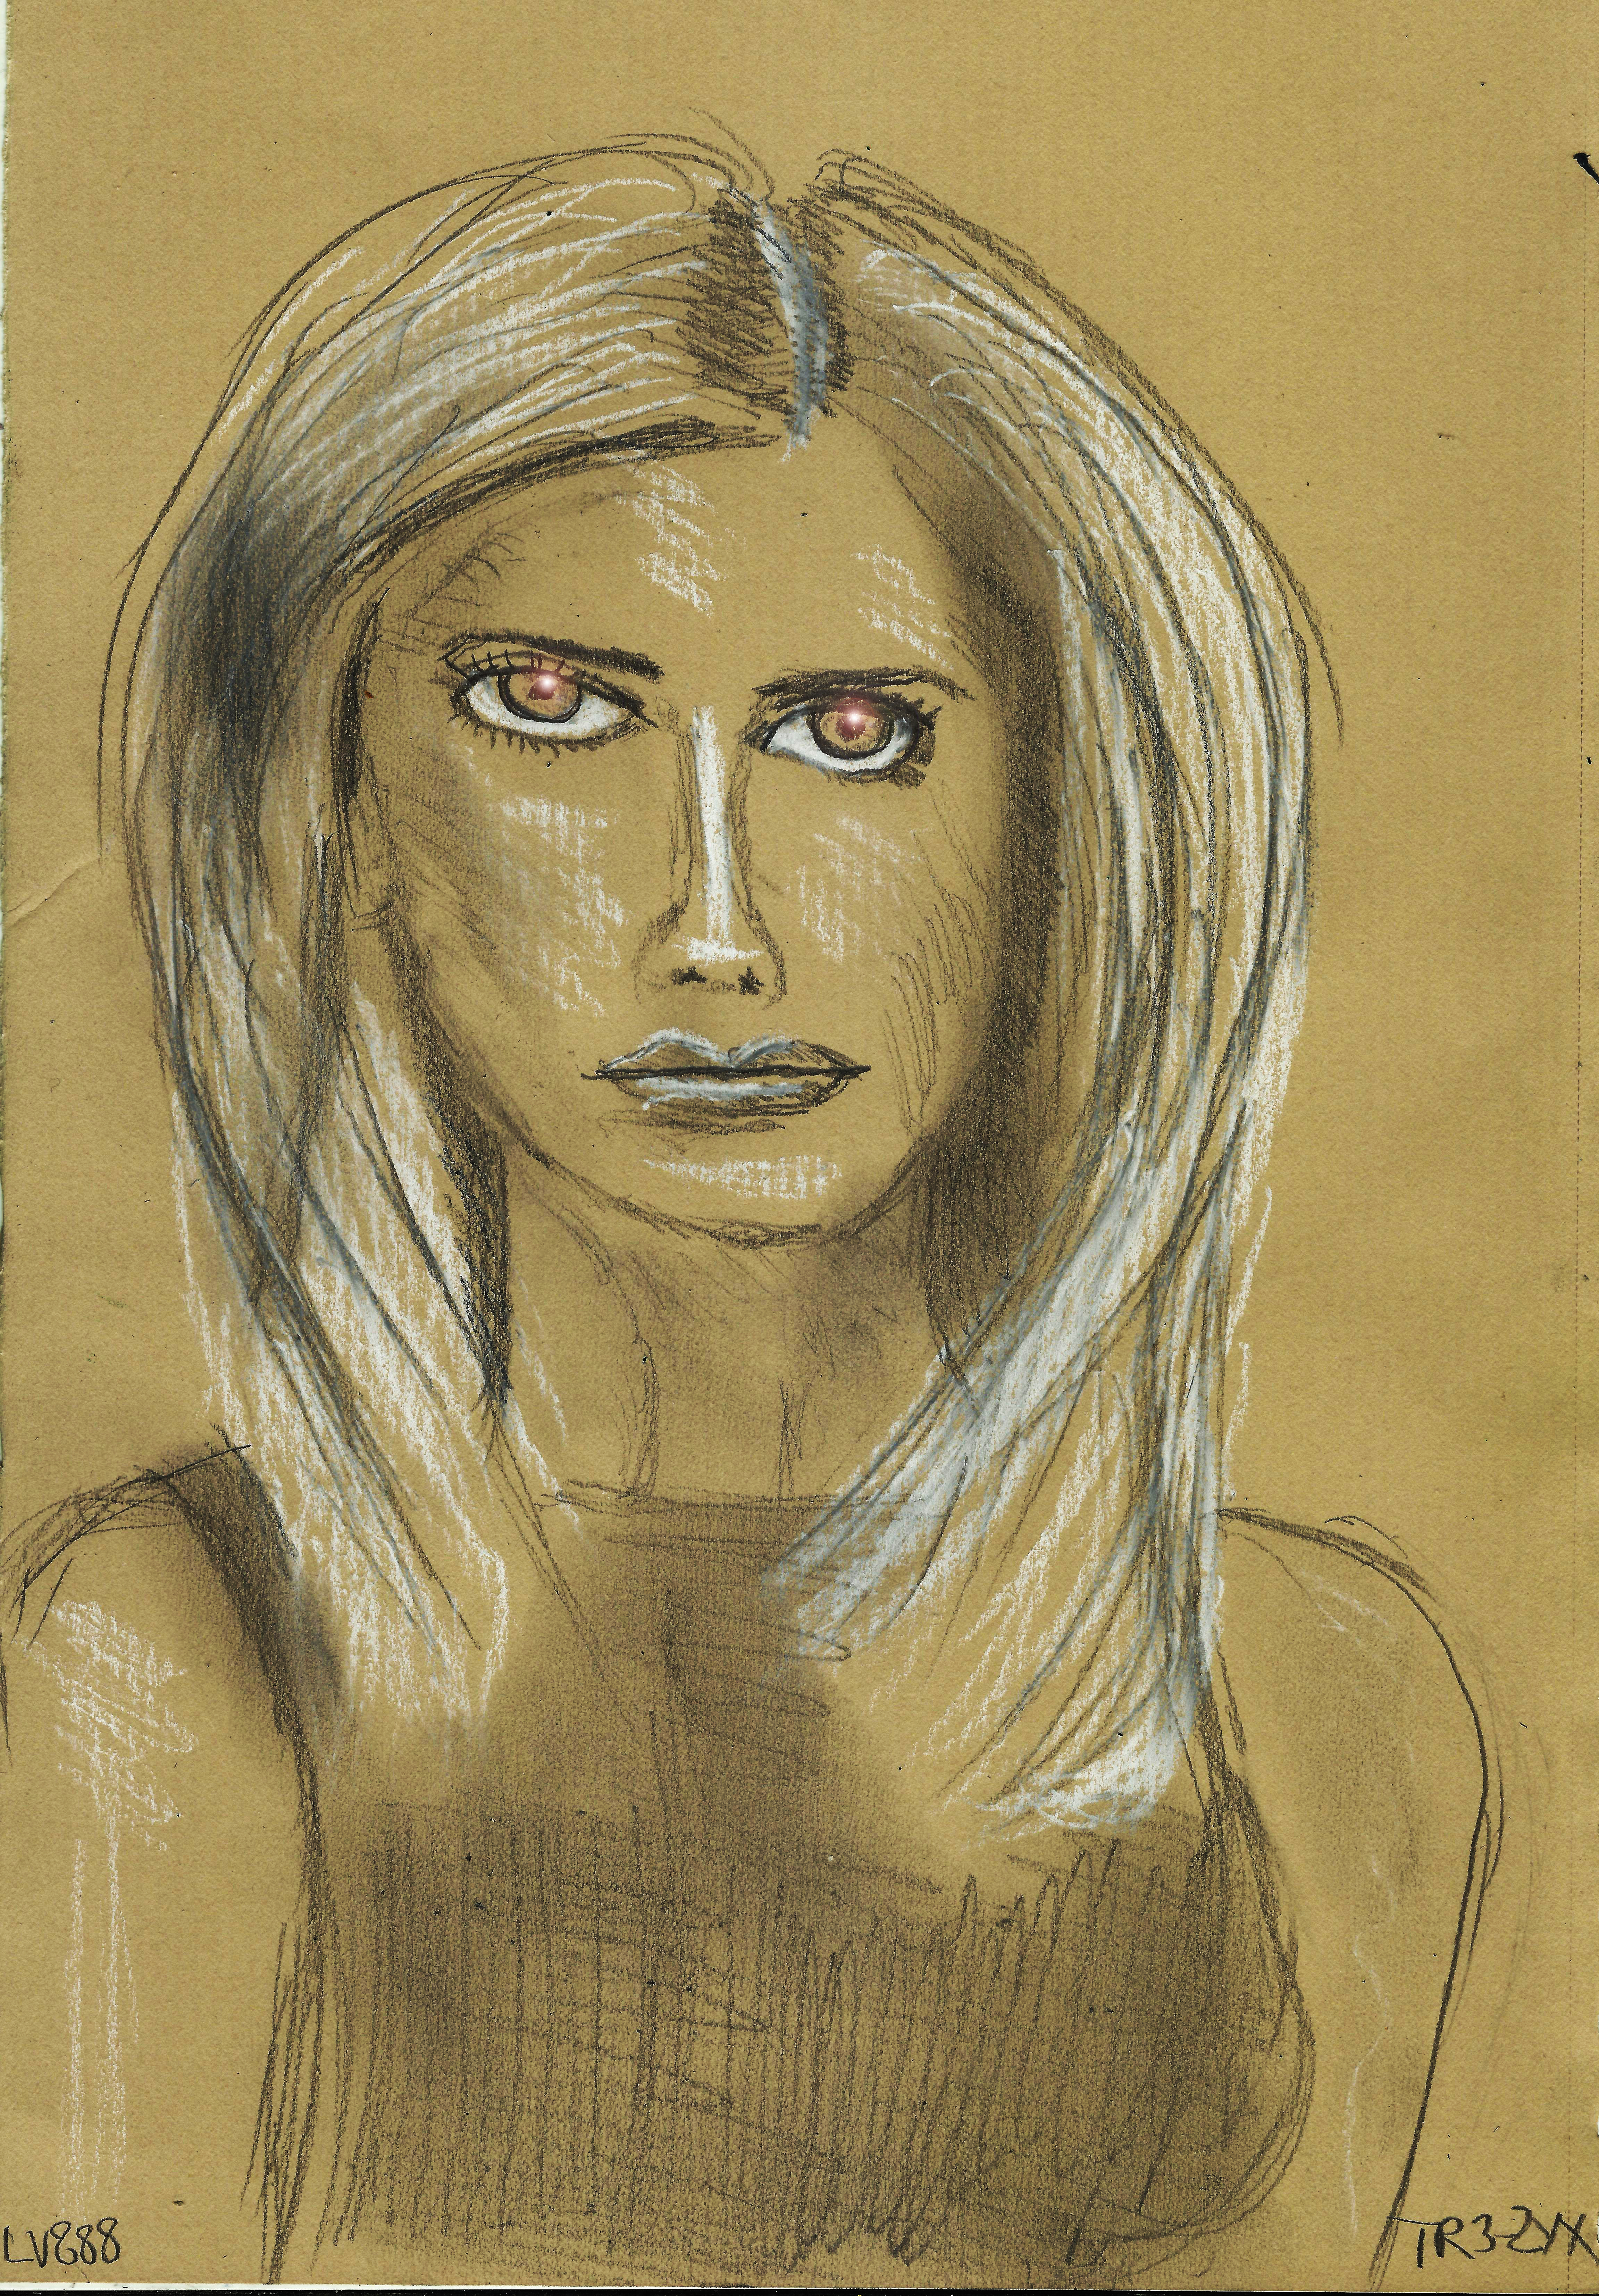 Buffy v881